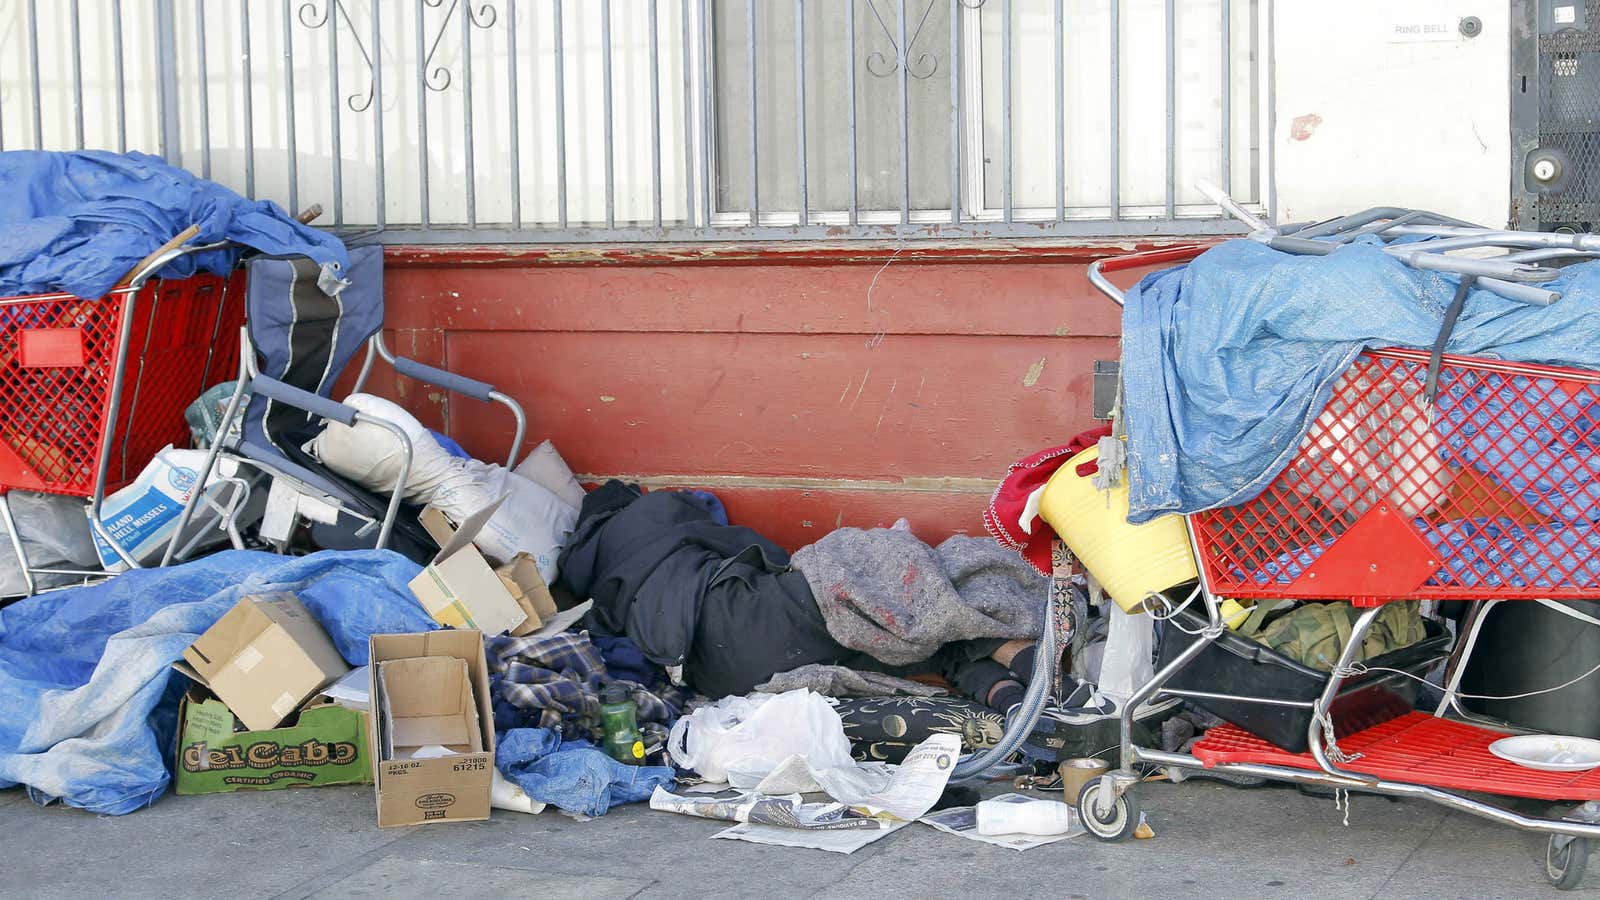 A homeless man sleeps among his possessions on Skid Row.